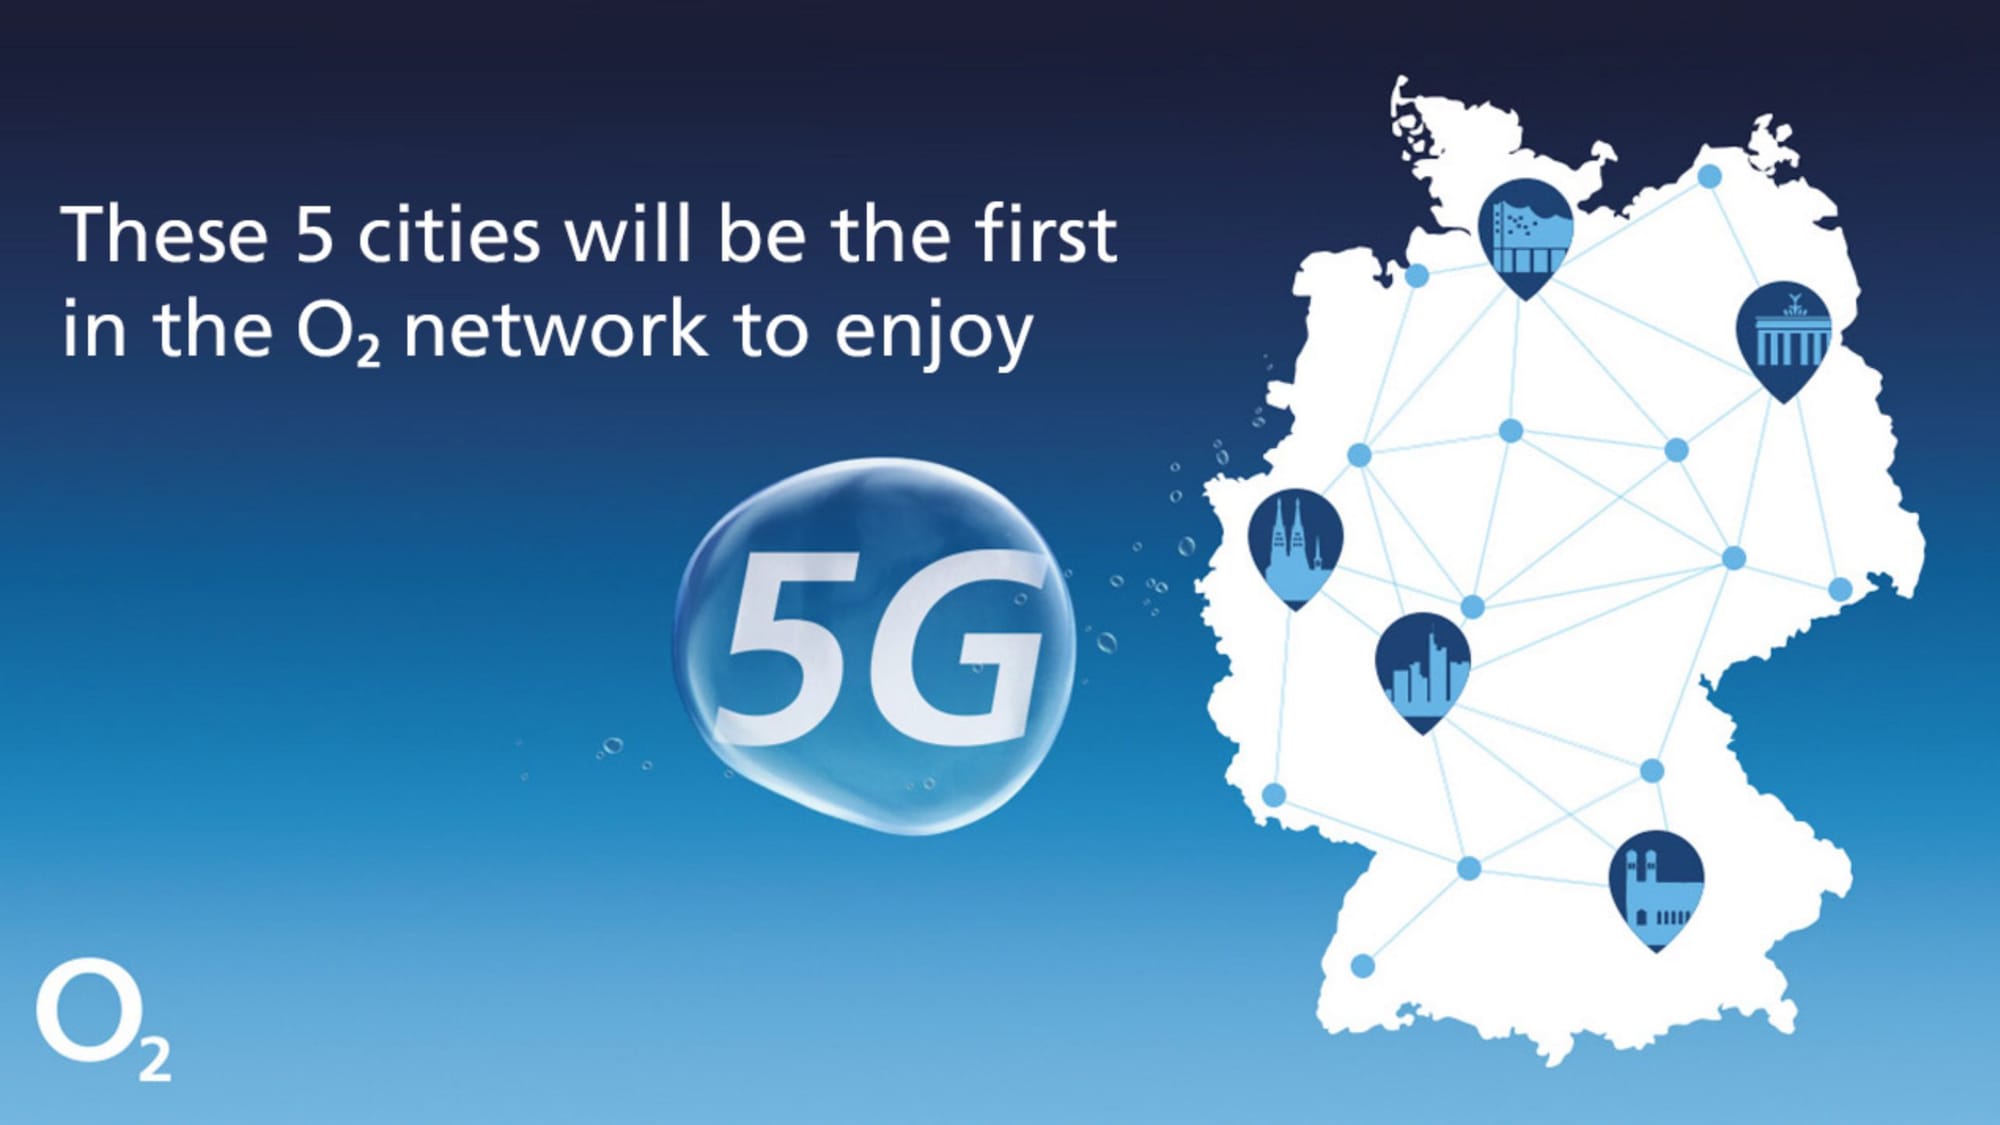 Telefónica Deutschland starts the 5G network